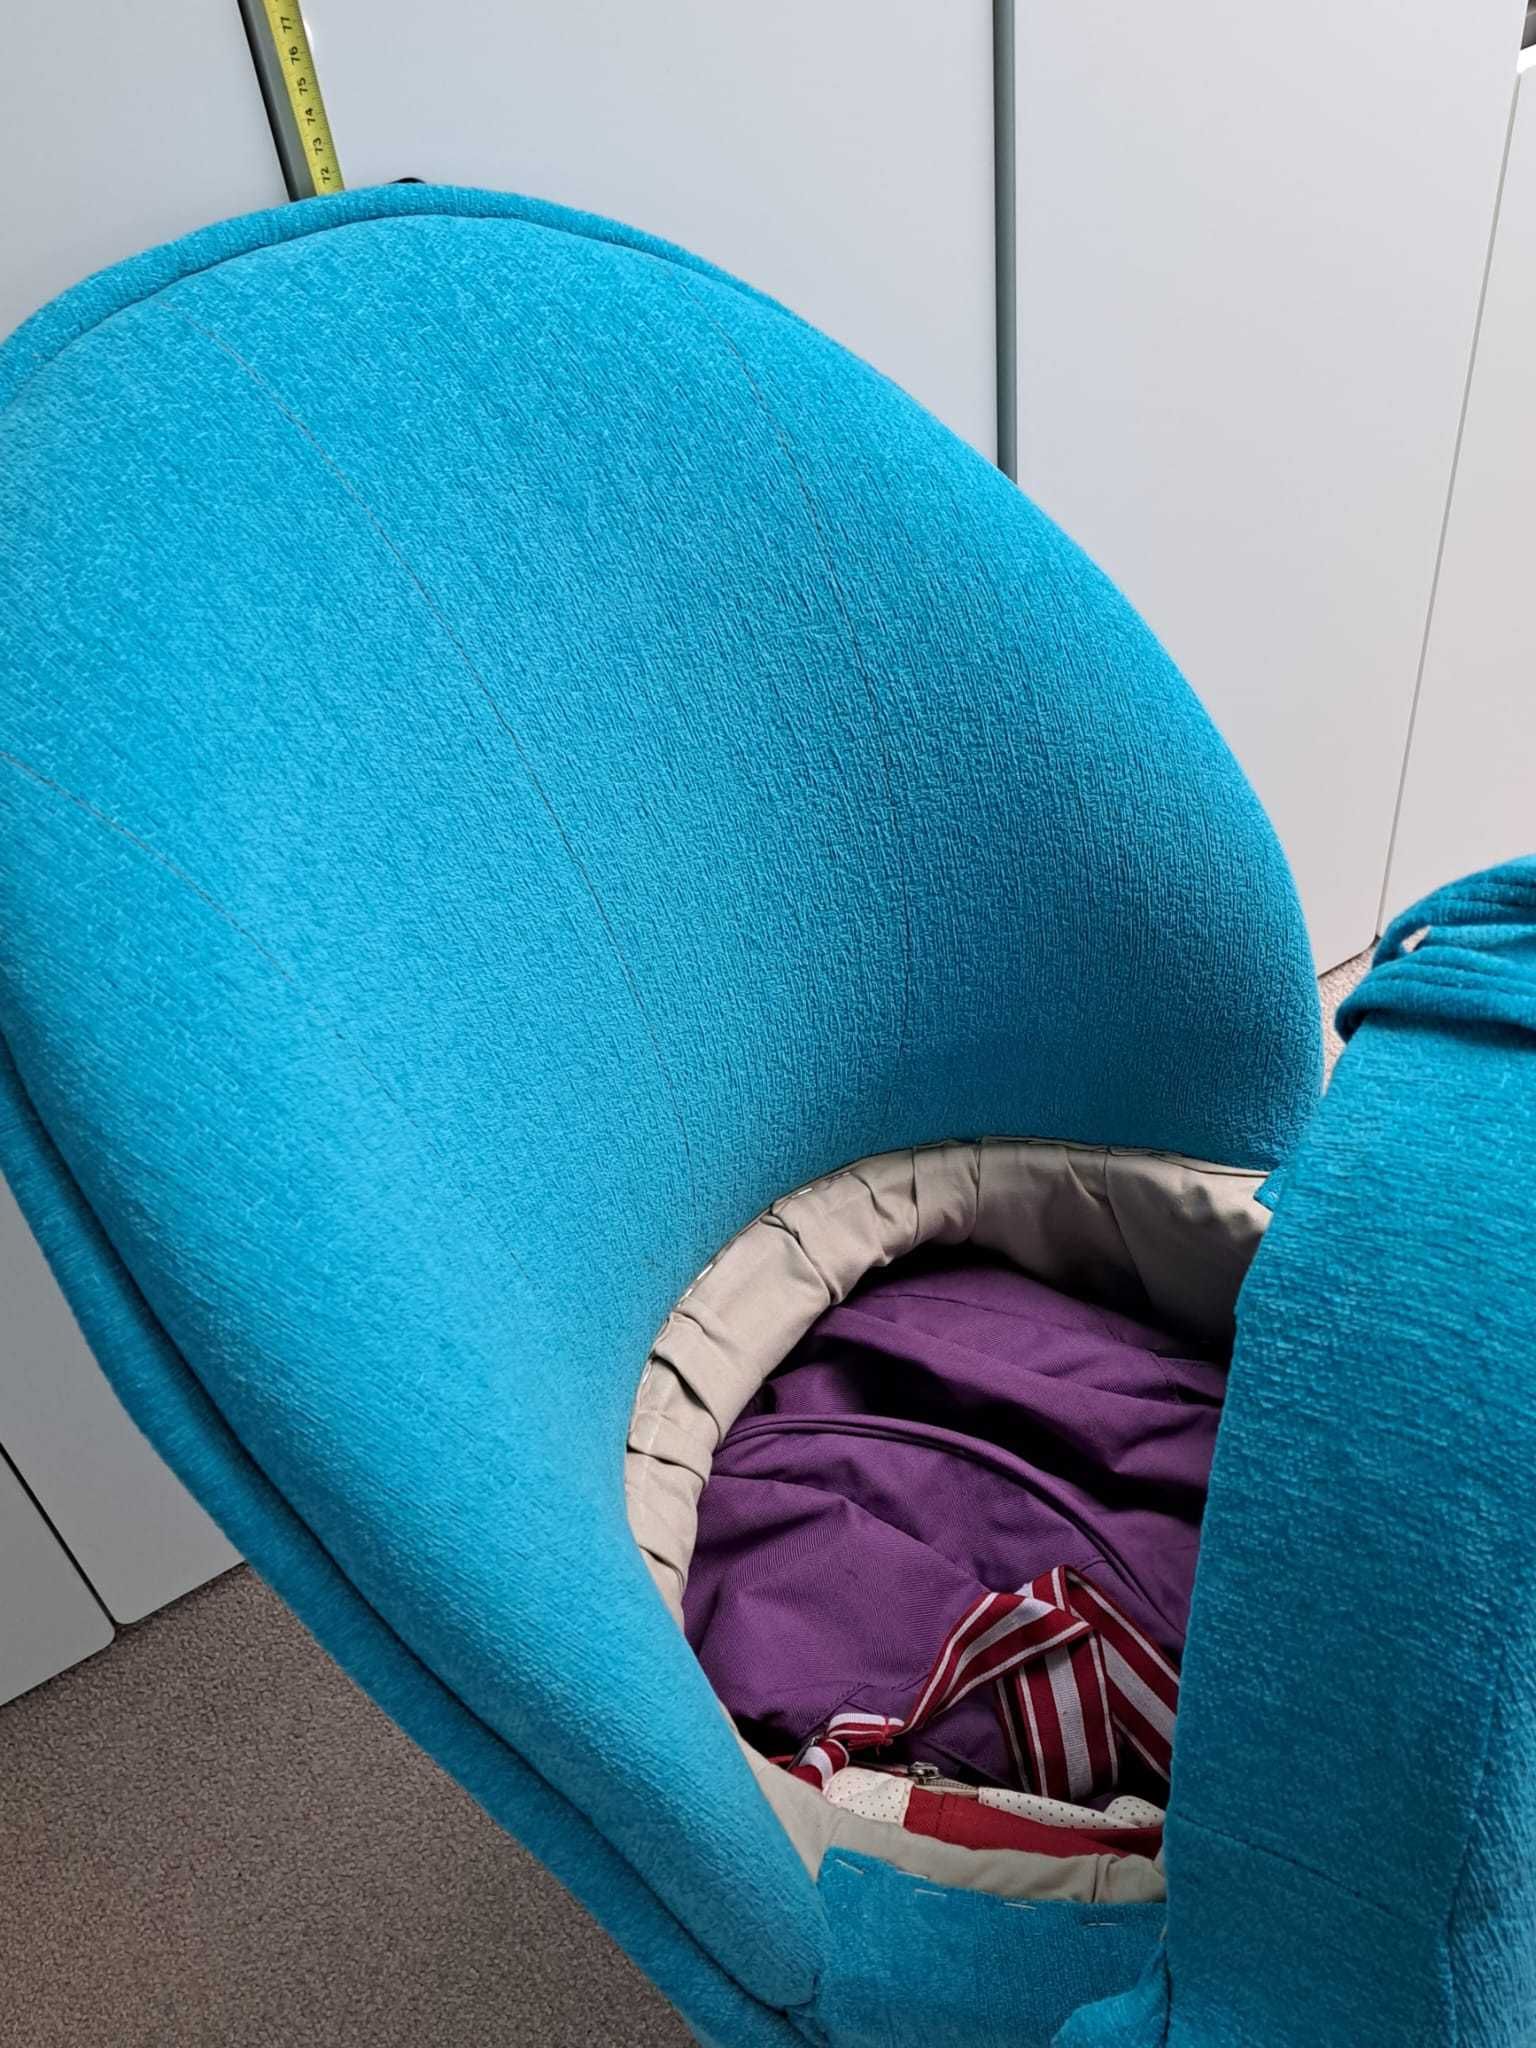 Puf z oparciem i schowkiem w siedzisku, mały fotel dla dziecka